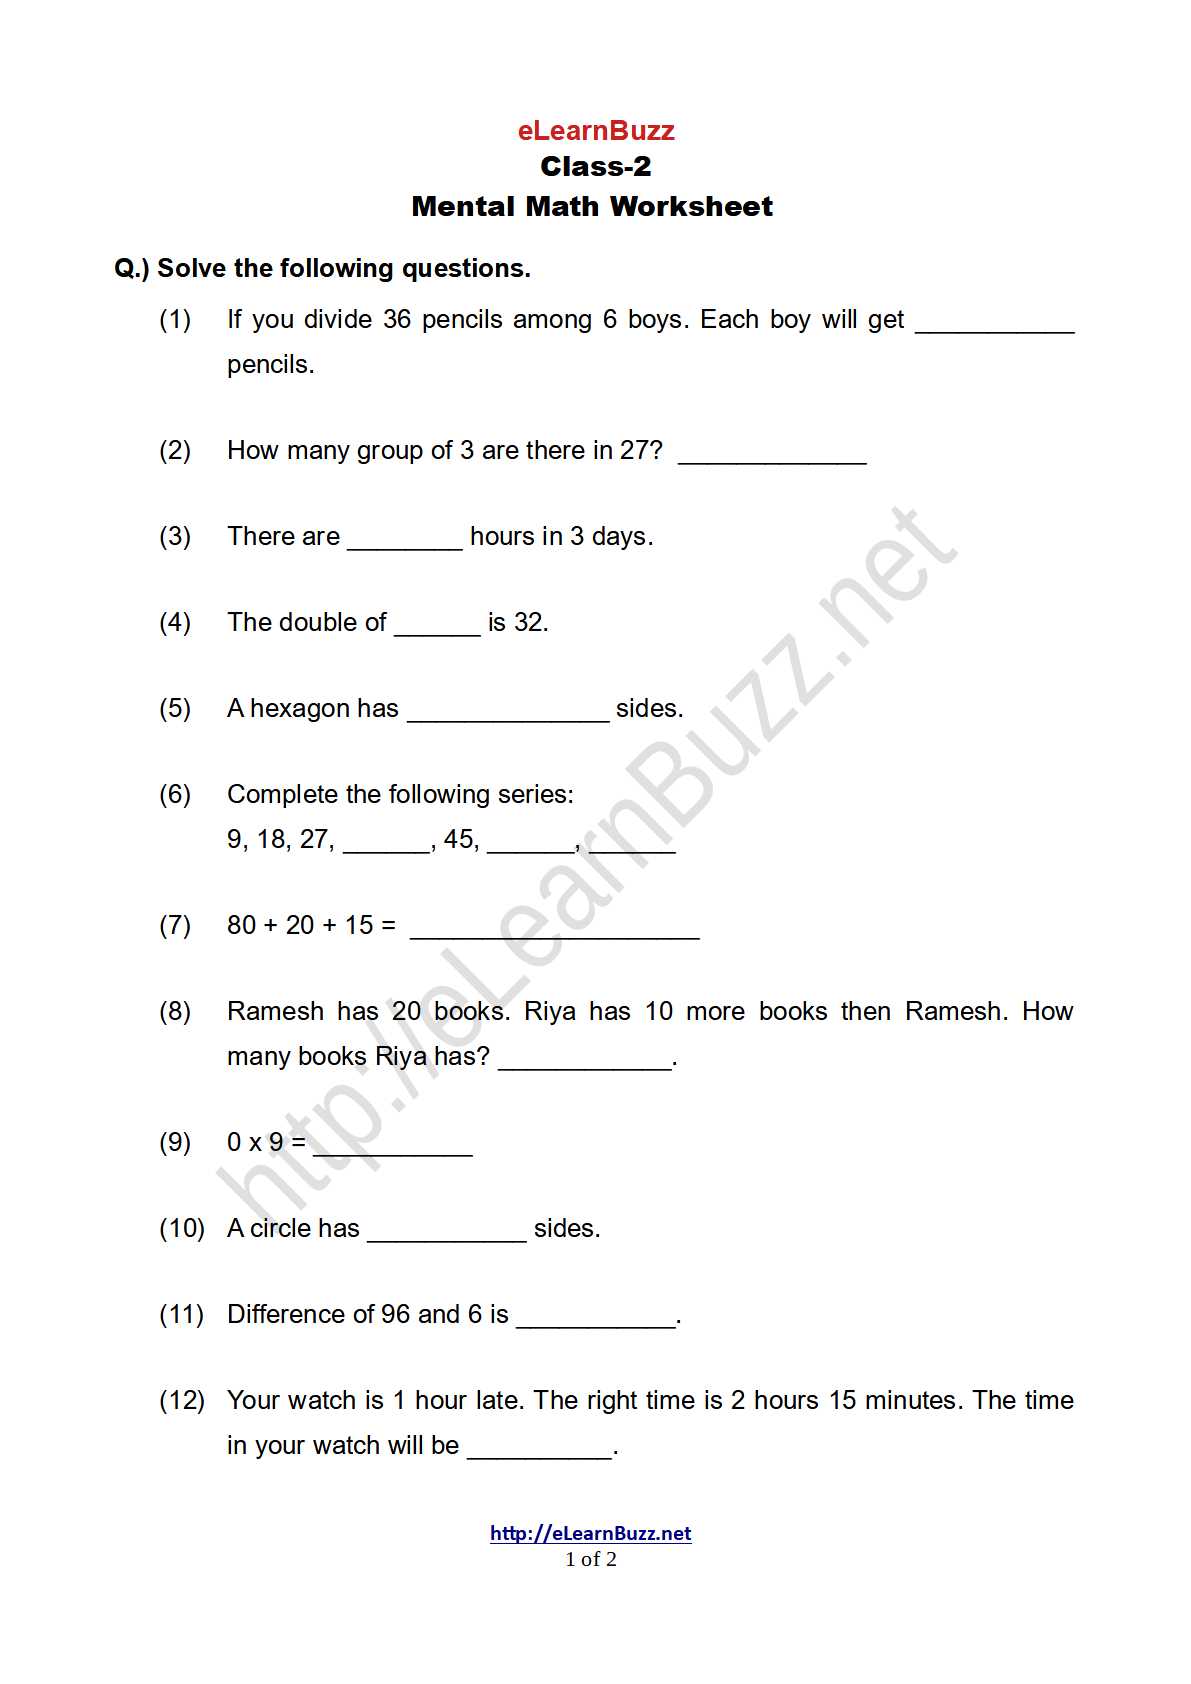 mental math worksheet for class 2 set 2 elearnbuzz